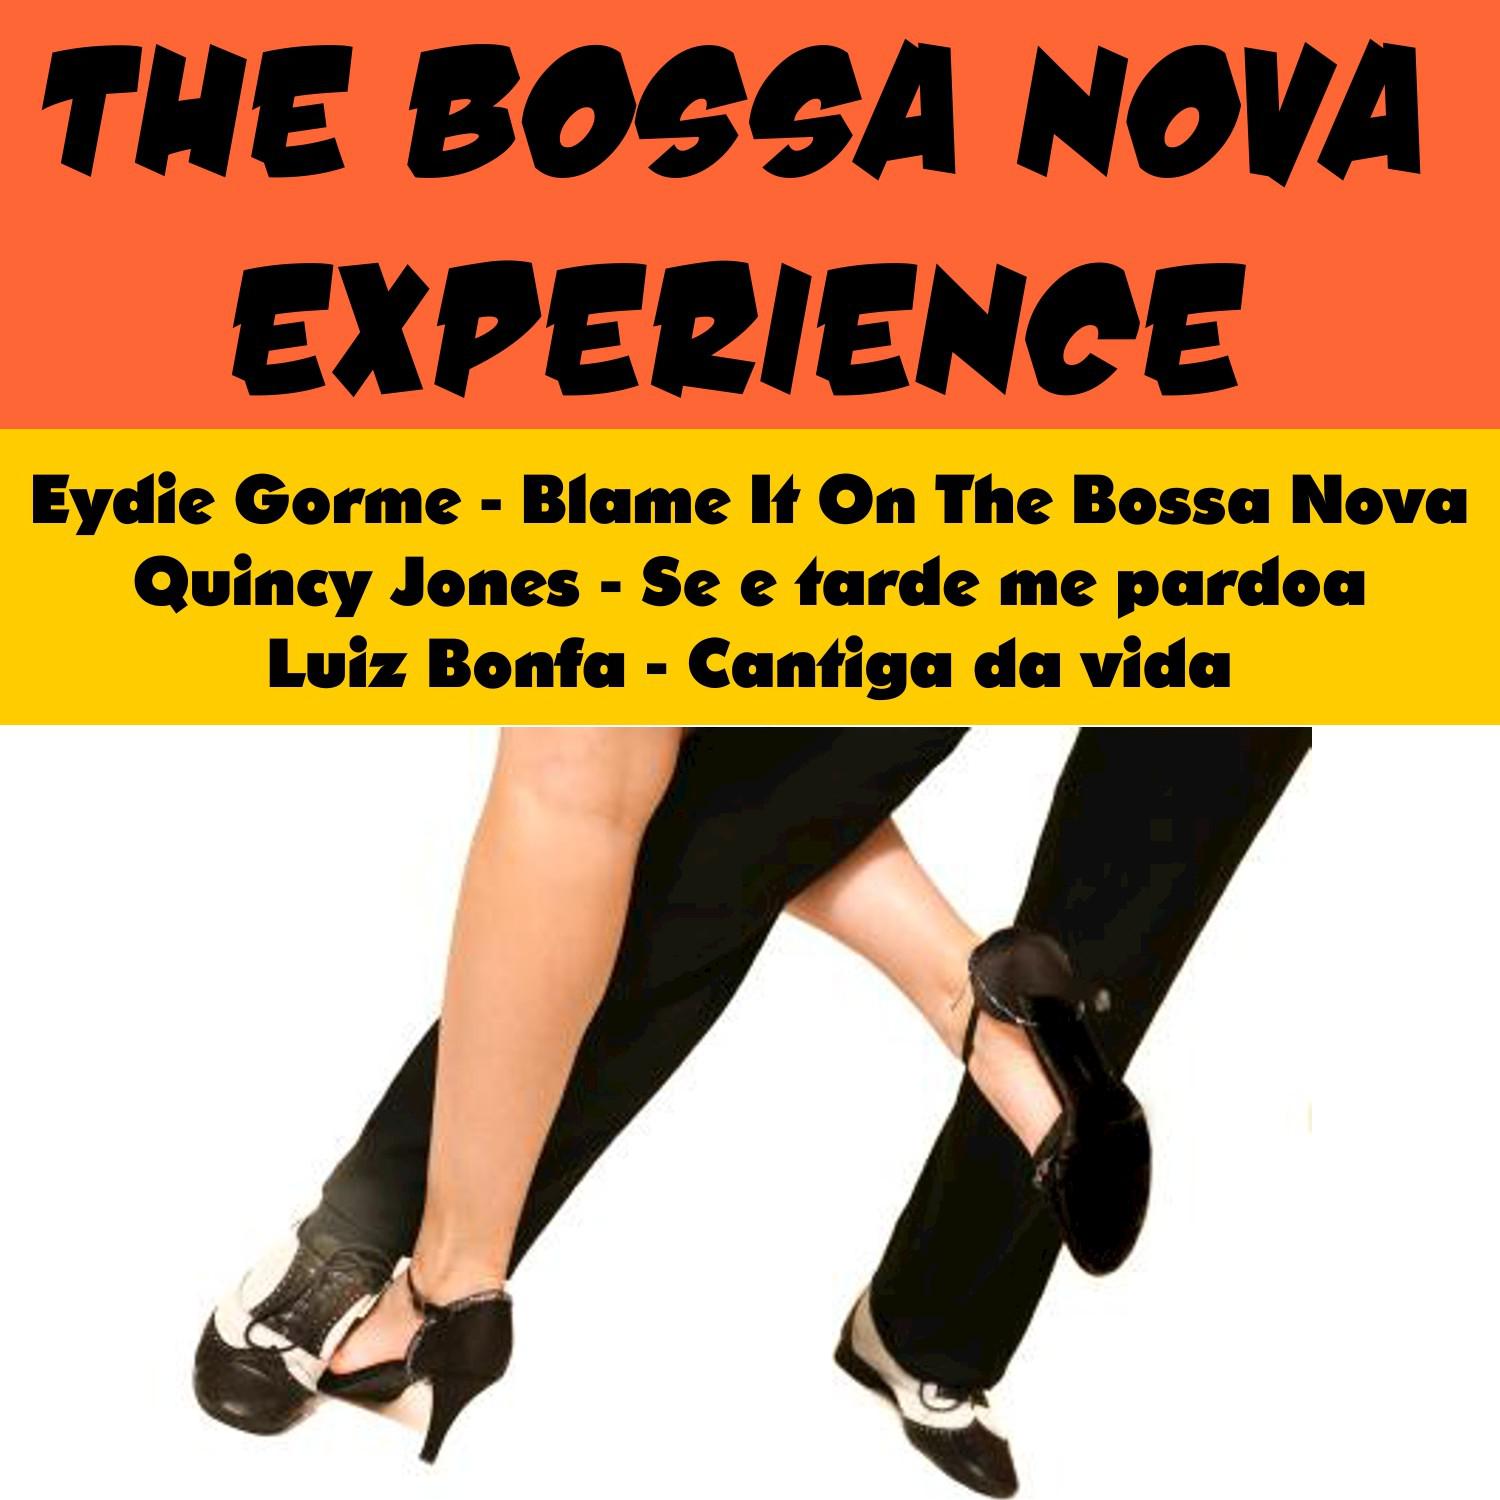 The Bossa Nova Experience